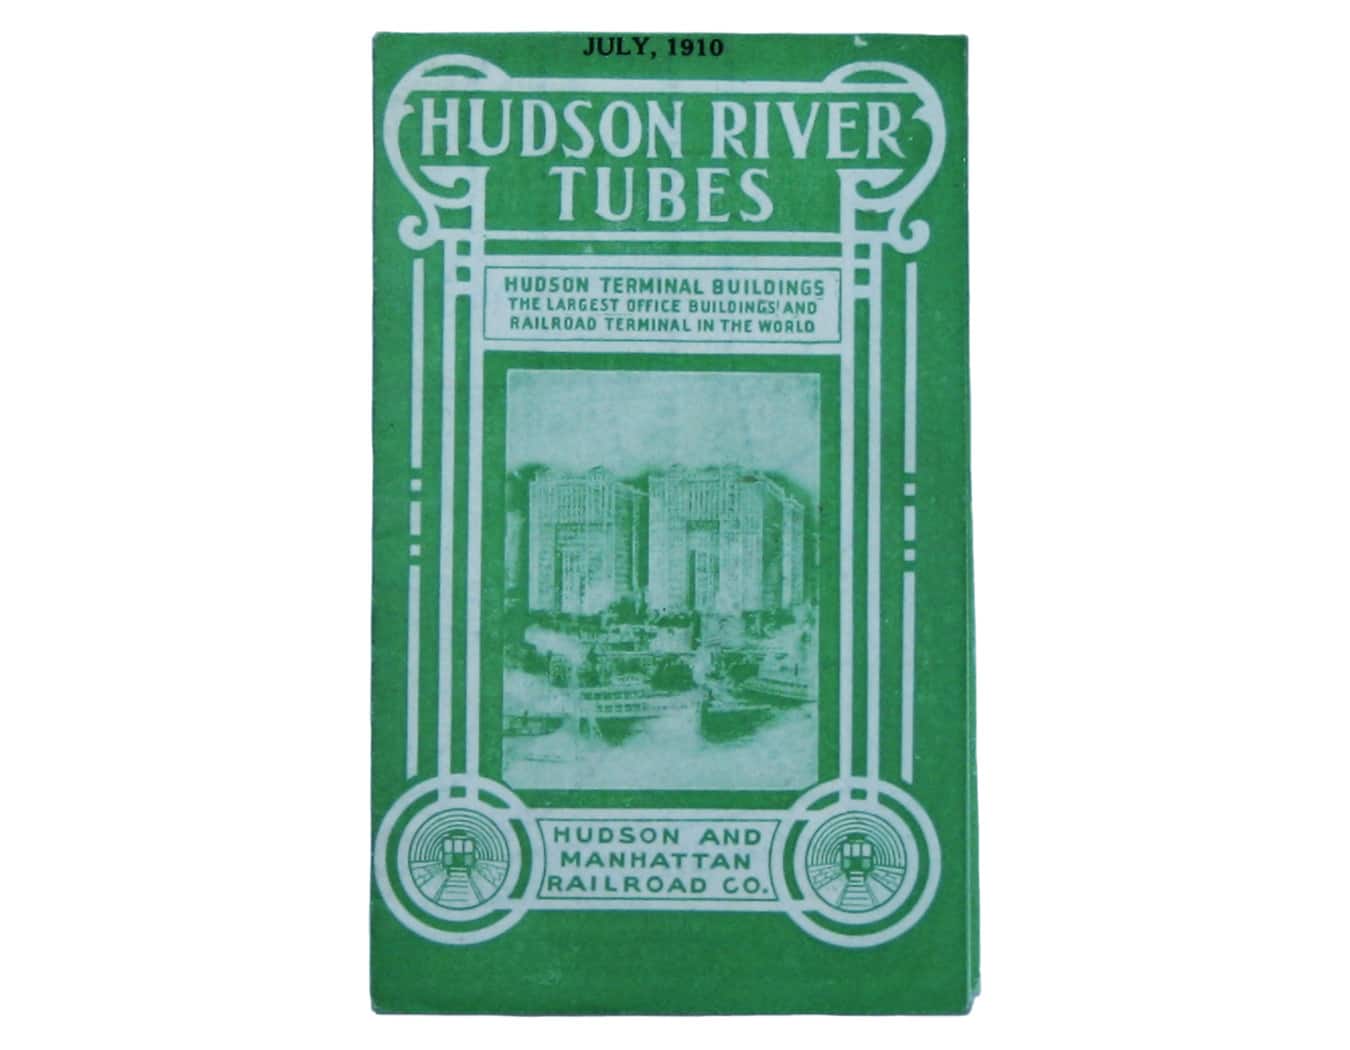 1910 Passenger Map of the Hudson River Tubes